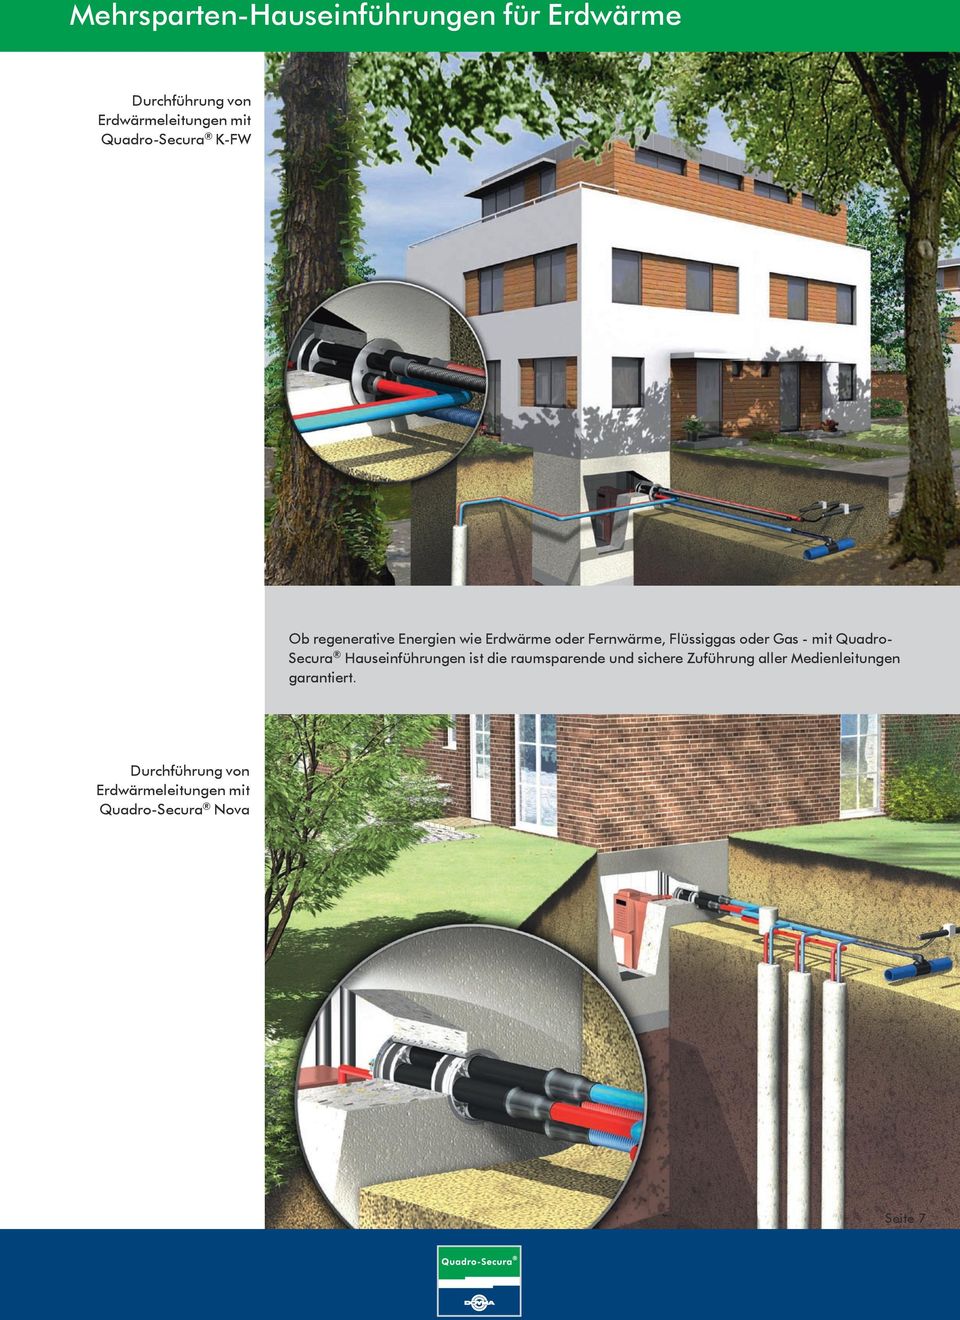 Gas - mit Quadro- Secura Hauseinführungen ist die raumsparende und sichere Zuführung